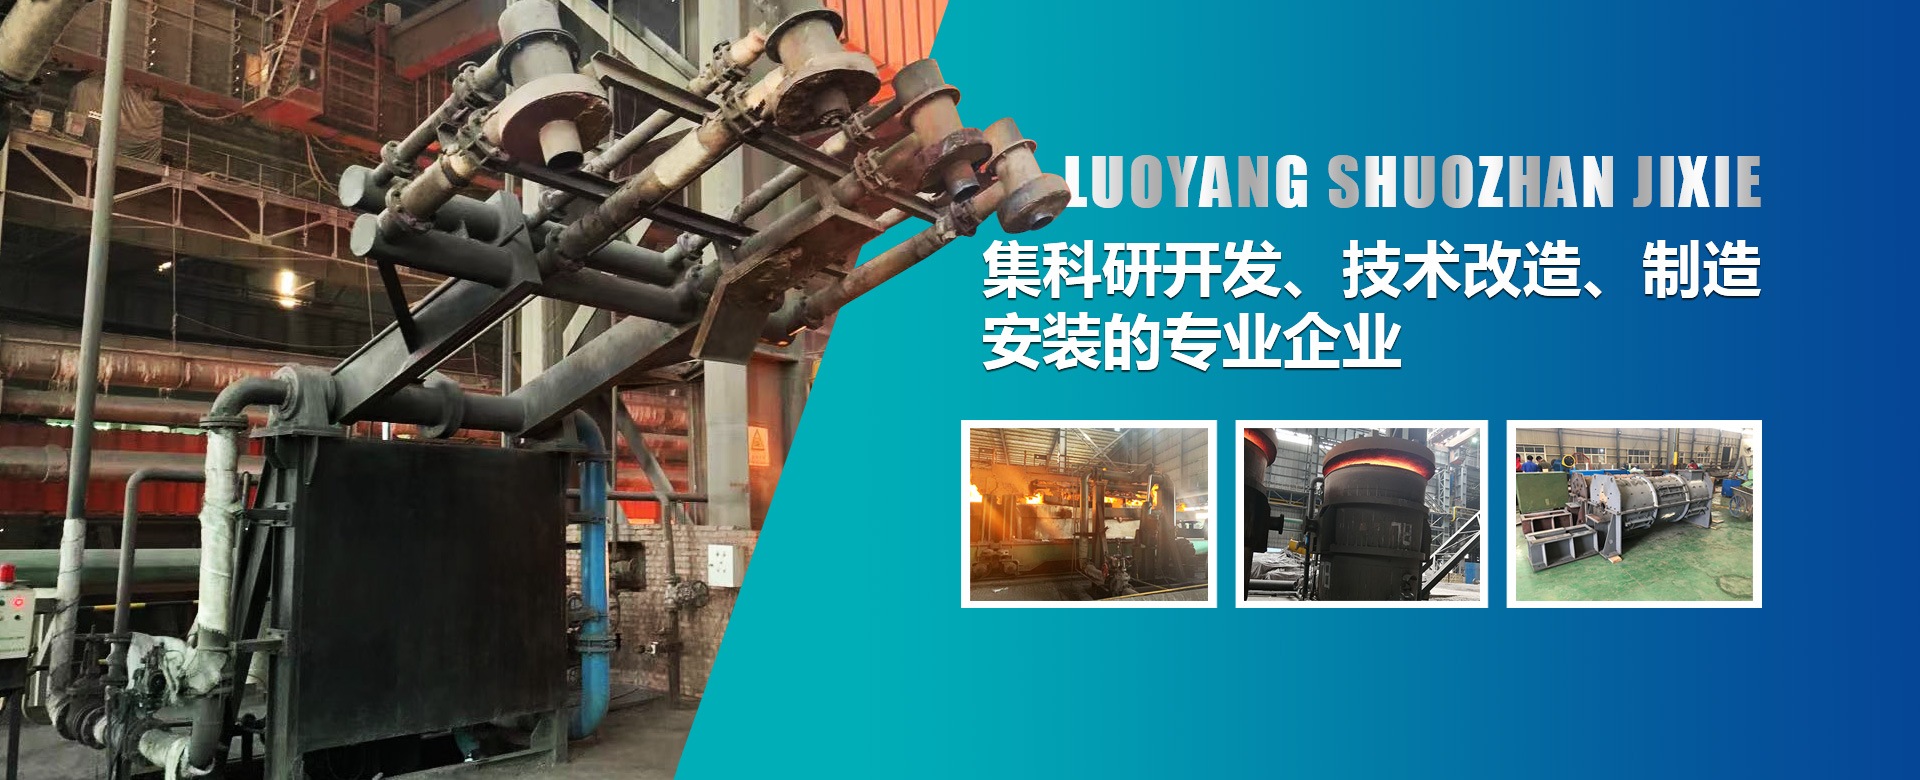 烘烤器是鋼鐵廠生產的必須設備，也是鋼鐵生產過程中能耗較大的設備